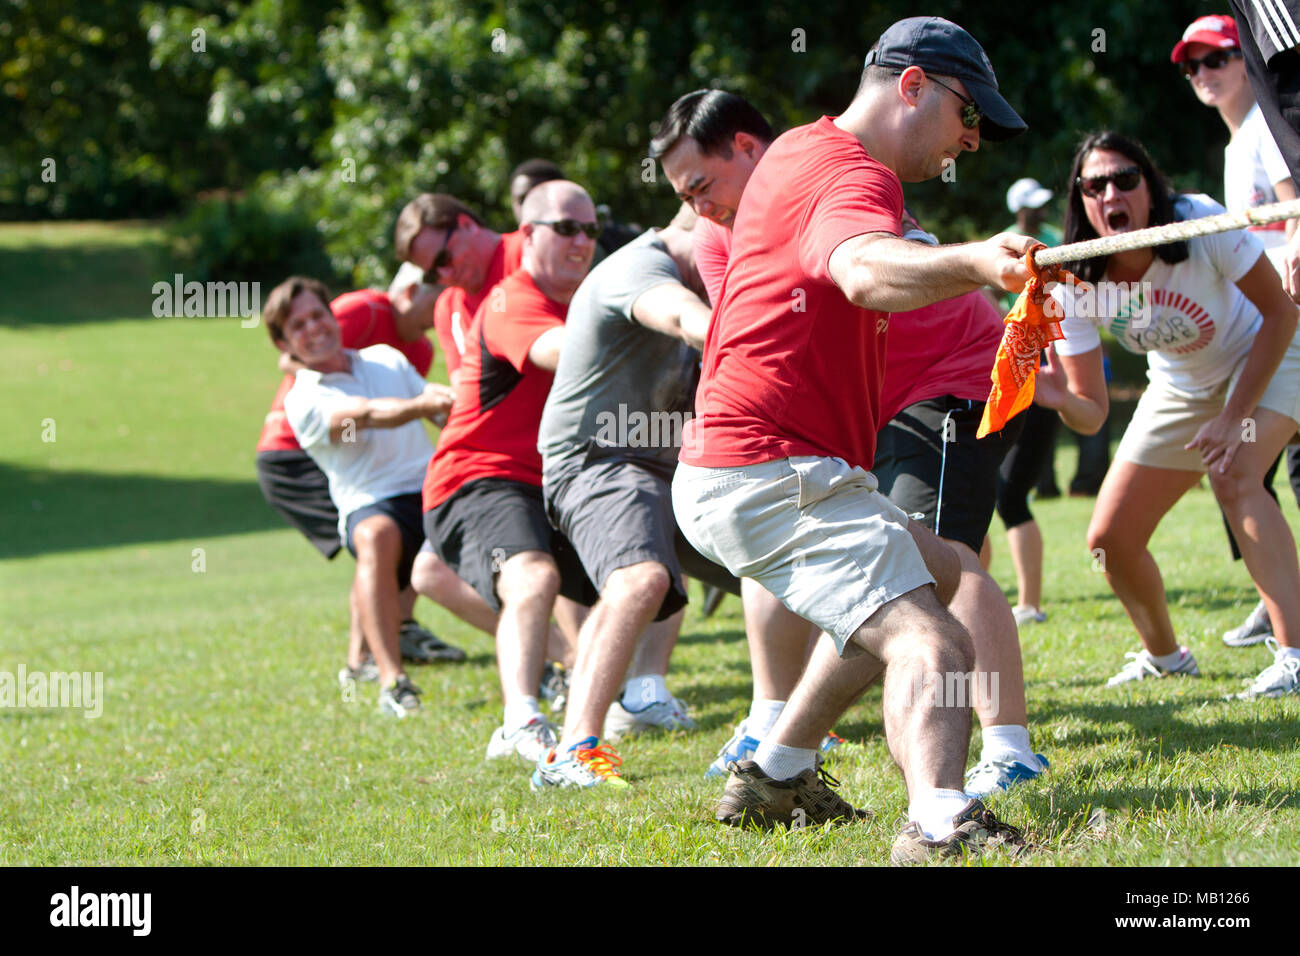 Une équipe tire dans la lutte à la corde la concurrence à une journée pour les enfants, un événement où des adultes jouent à des jeux d'enfants pour des organismes de bienfaisance le 7 septembre 2013 à Atlanta, GA. Banque D'Images